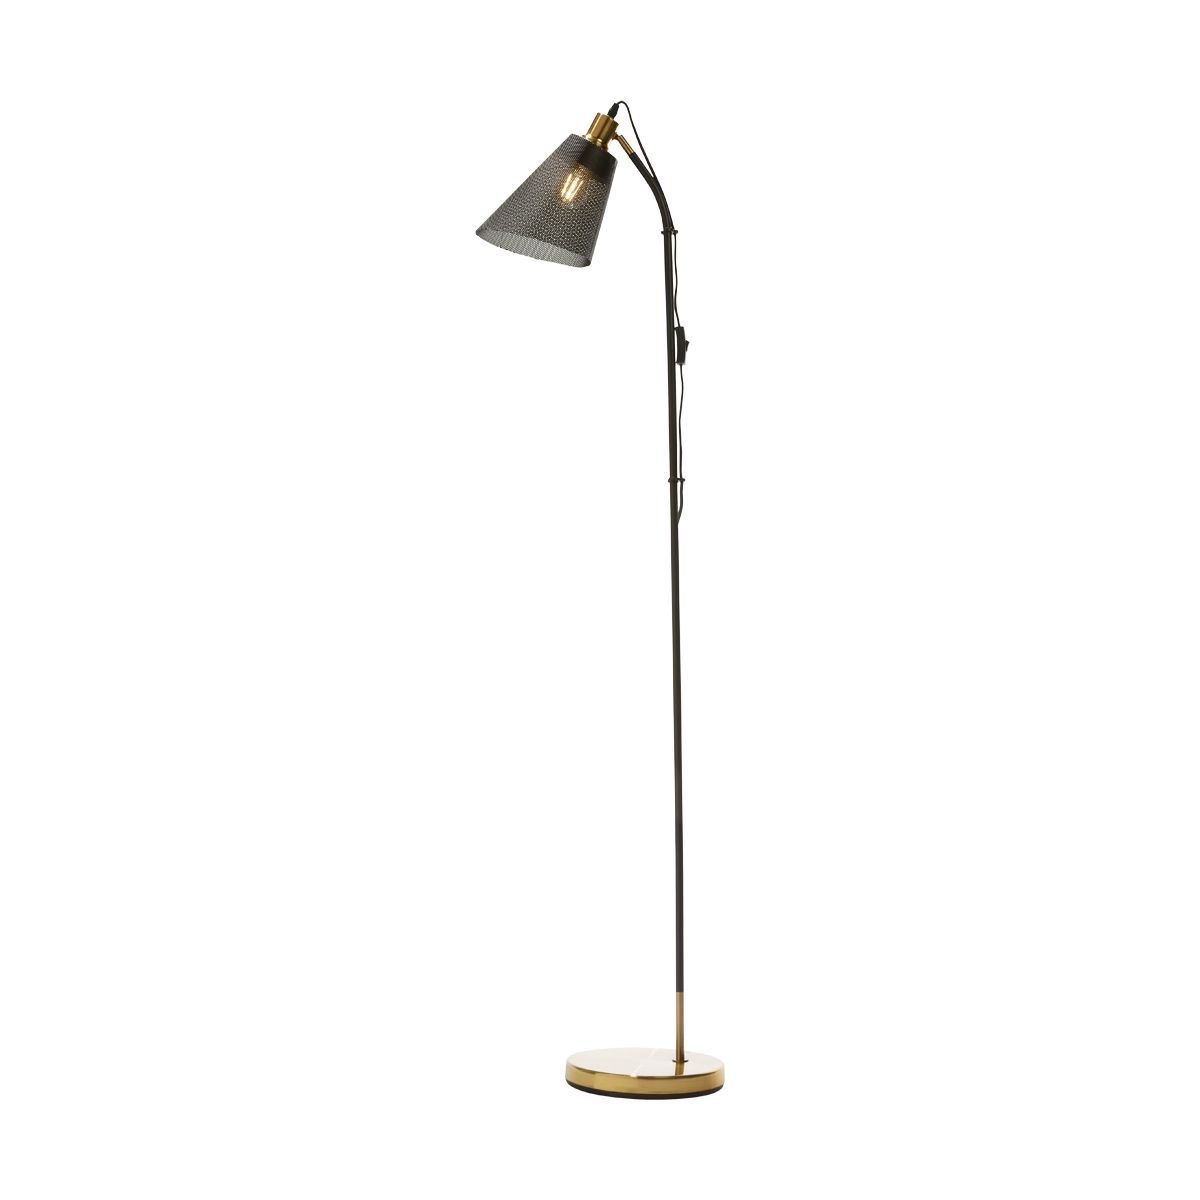 Mesh Shade Floor Lamp Kmart Floor Lamp Lighting Home Decor in measurements 1200 X 1200